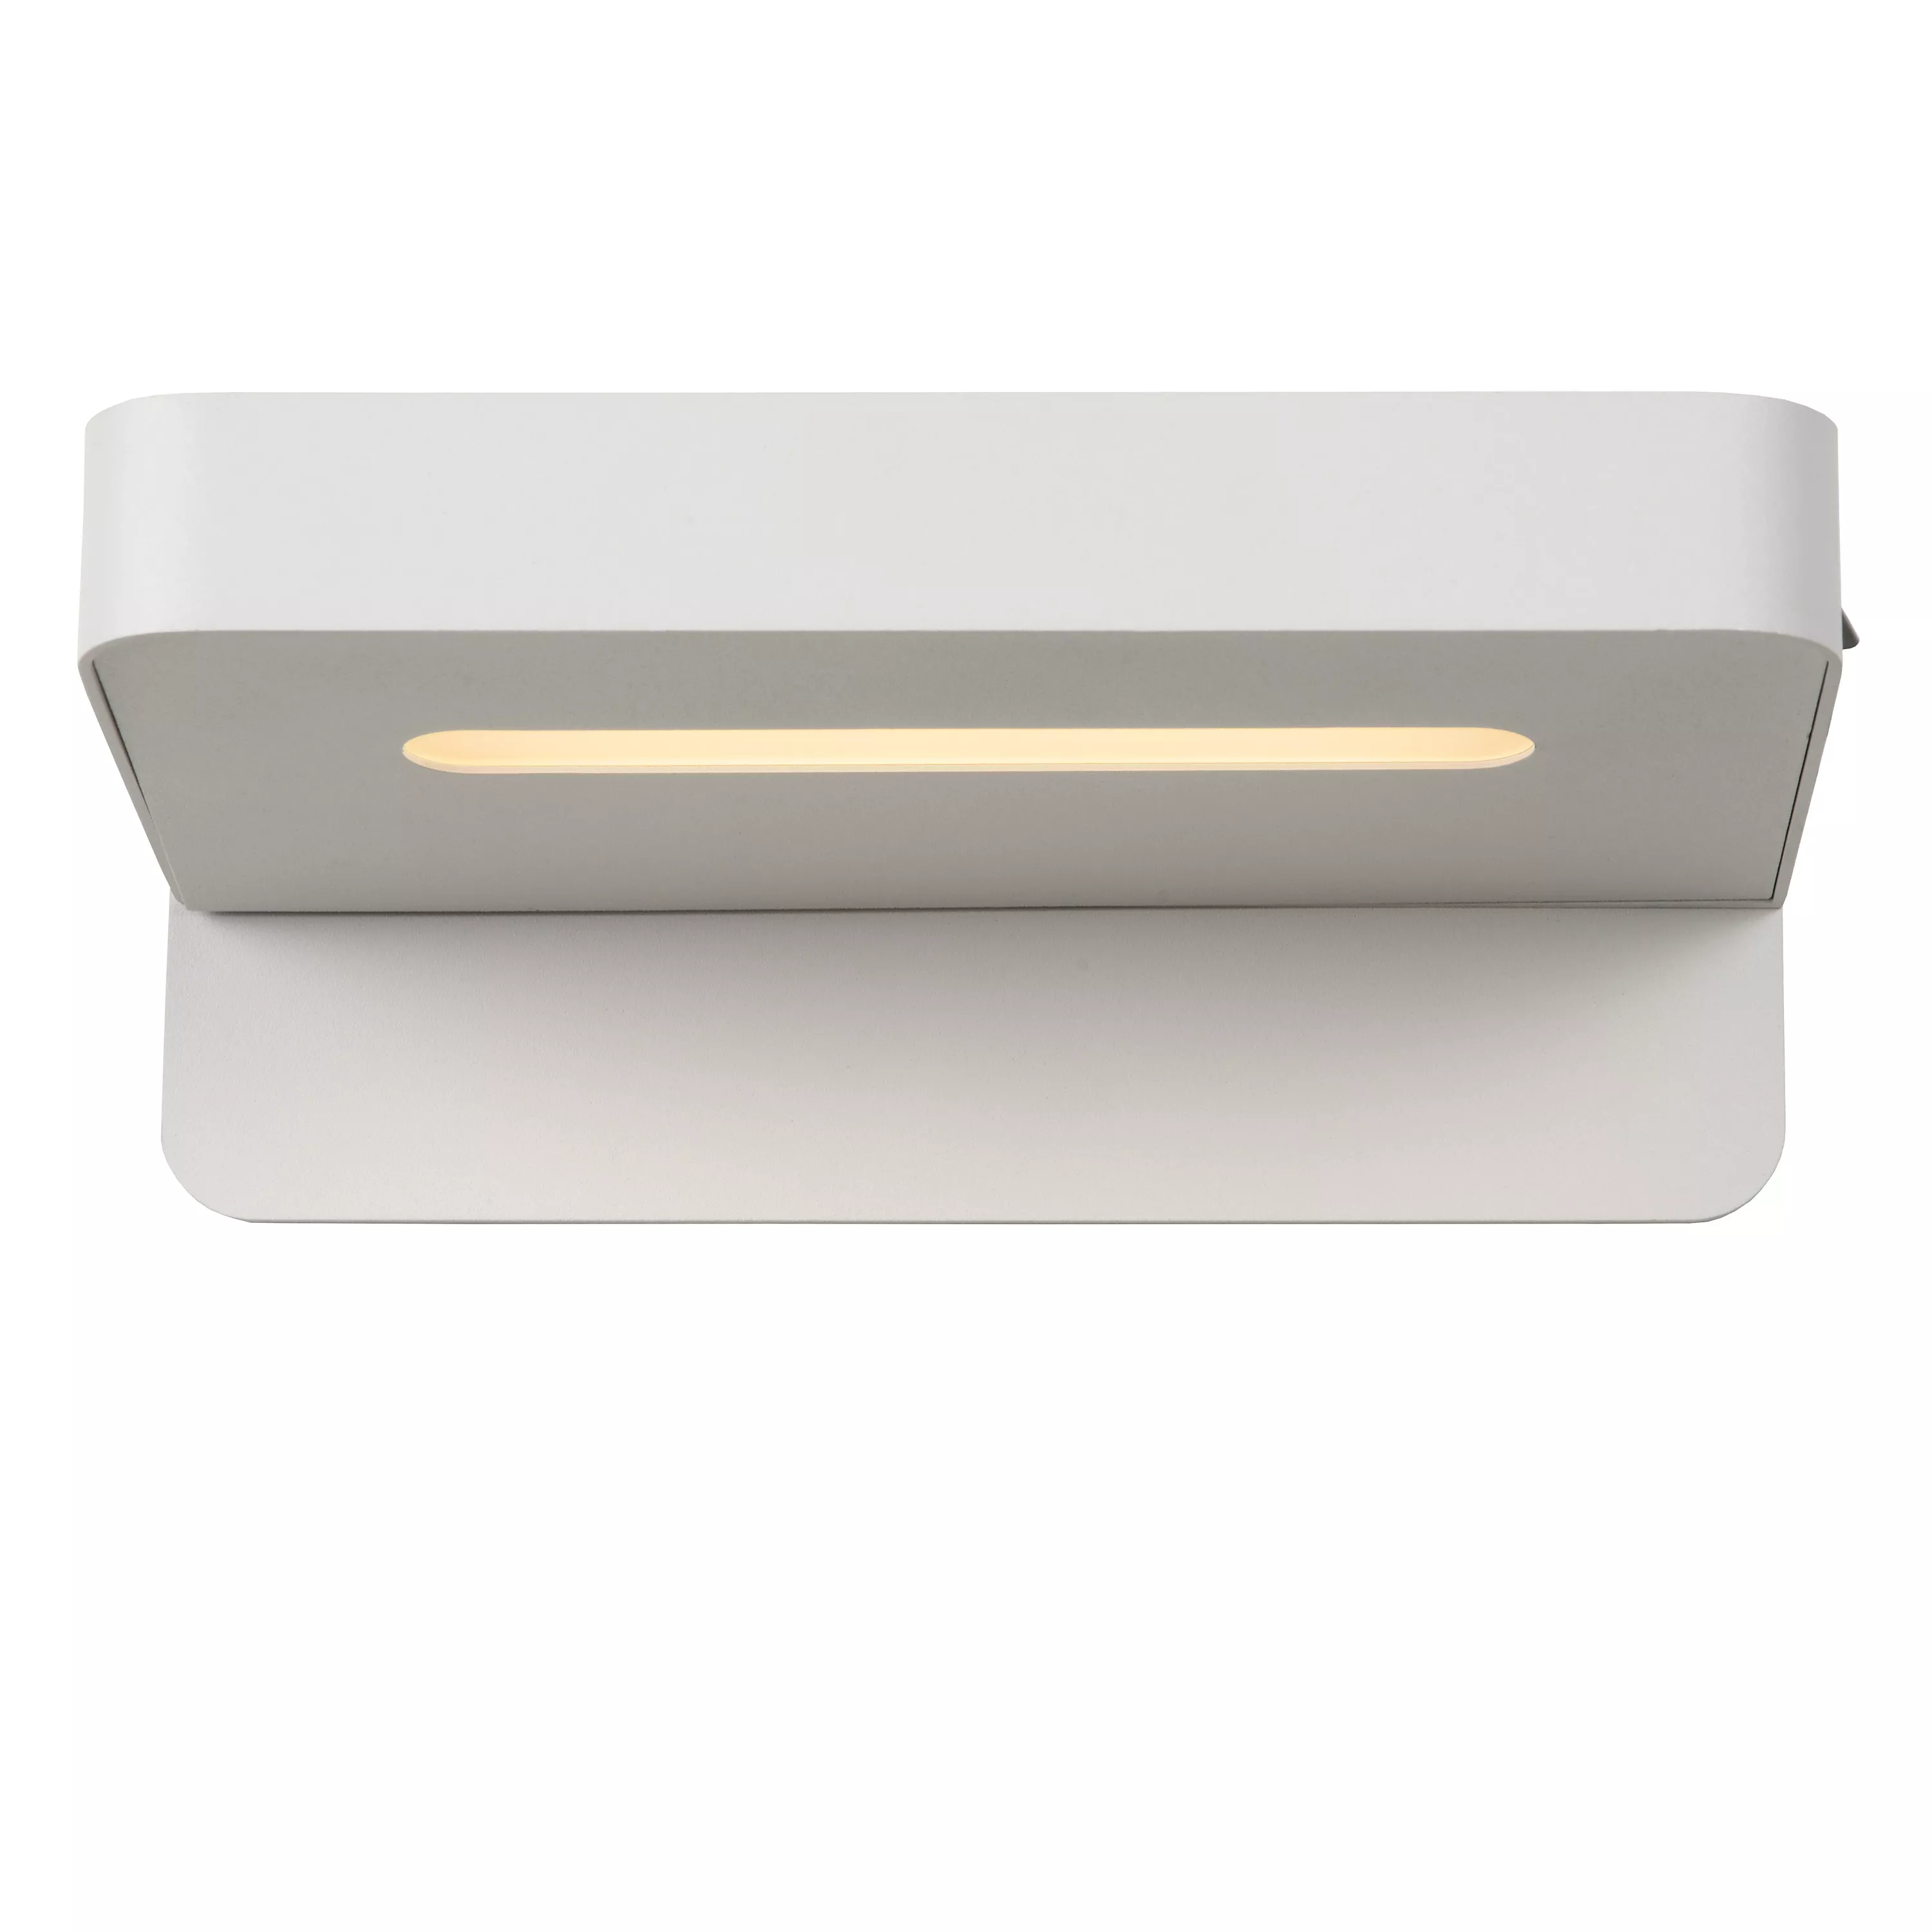 Multifunkční nástěnné svítidlo Atkin v bílé barvě se skrytým zdrojem a zabudovaným USB portem.